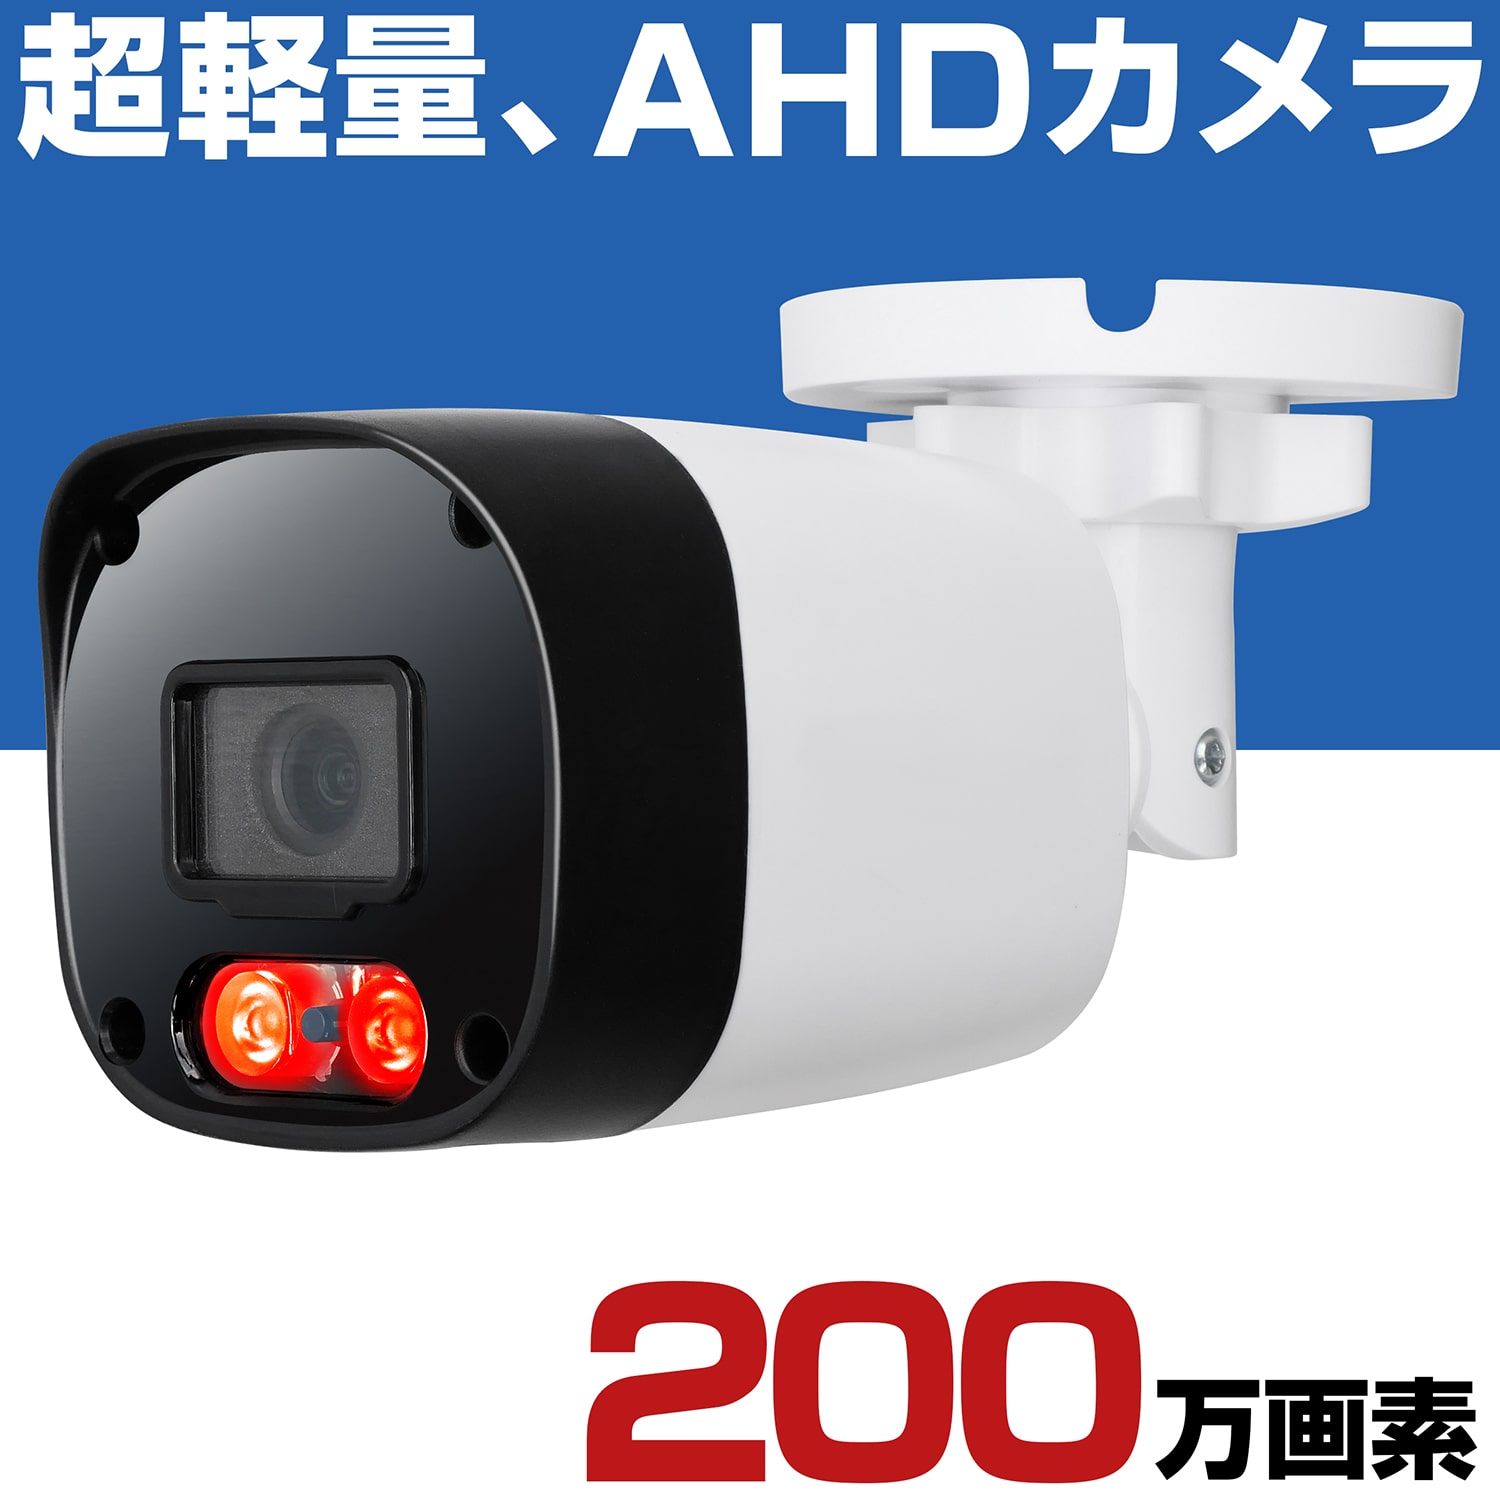 hƃJ AHD 200f O ƒp L 1080P ^ h ԊO Î ԏ Ԍ ԏr炵 Ɩp { Zbg 3.6mm Lp Y HP2000P